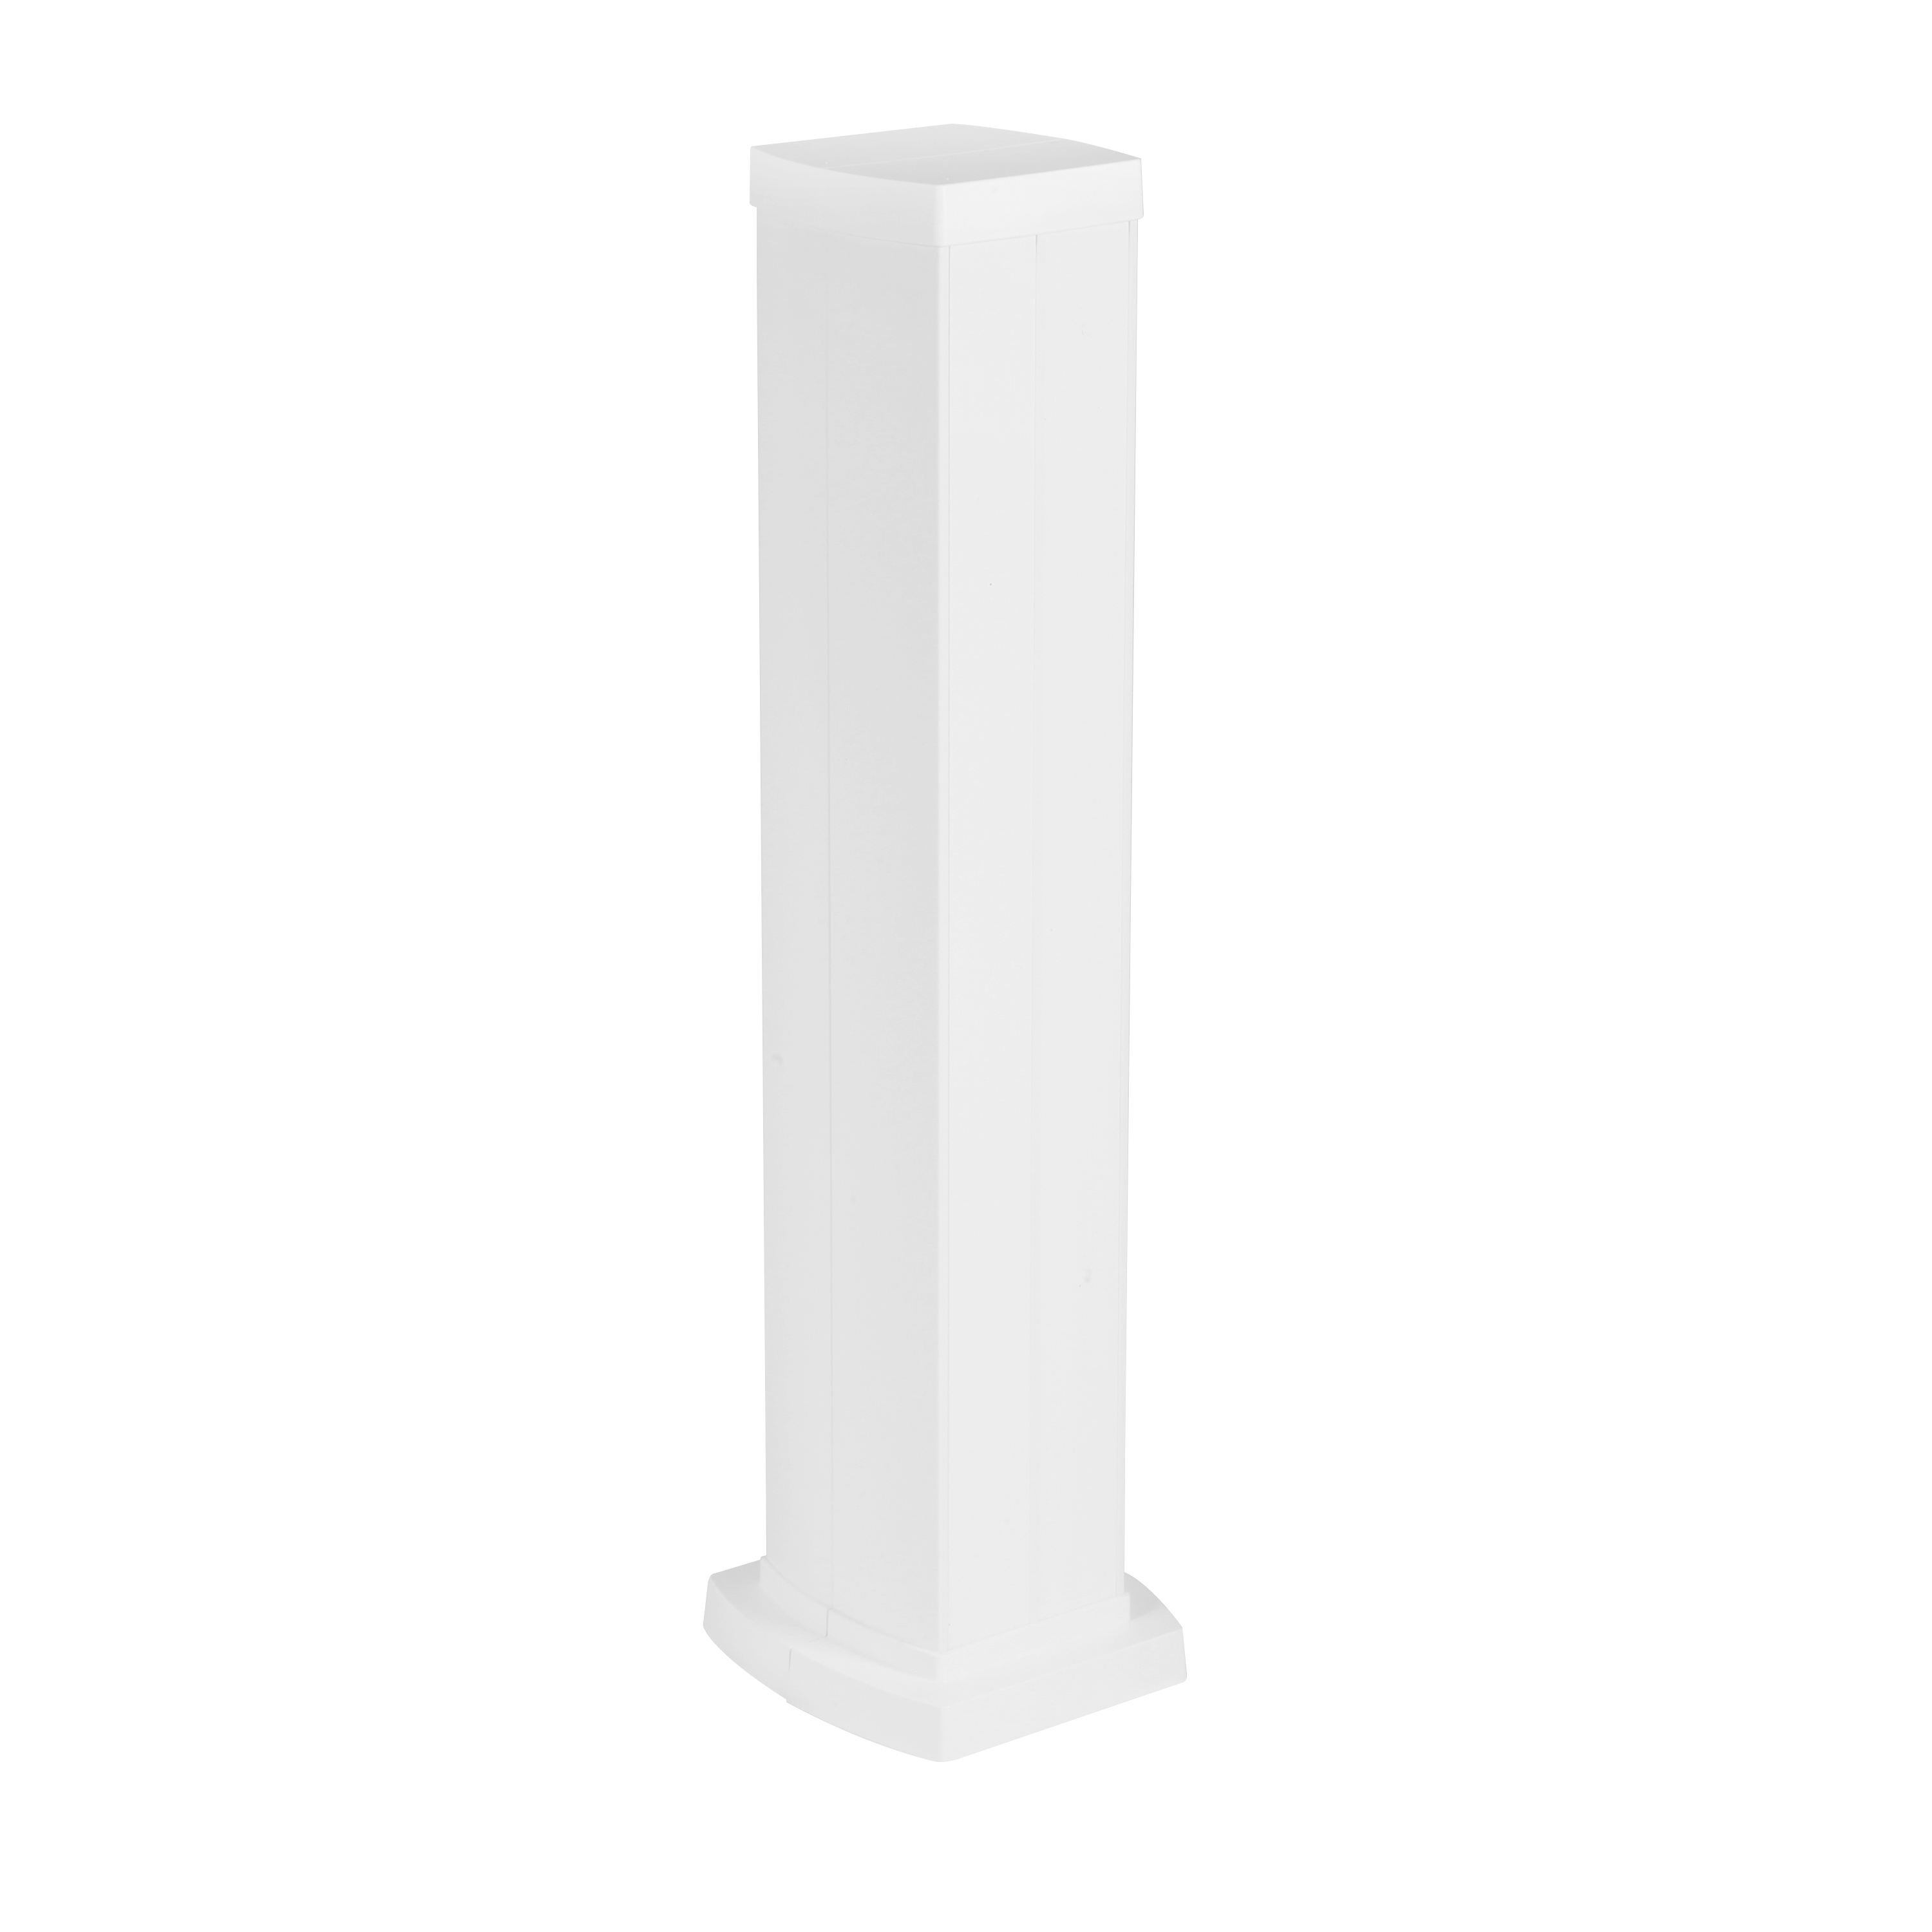 Legrand Snap-On мини-колонна алюминиевая с крышкой из пластика 4 секции, высота 0,68 метра, цвет белый